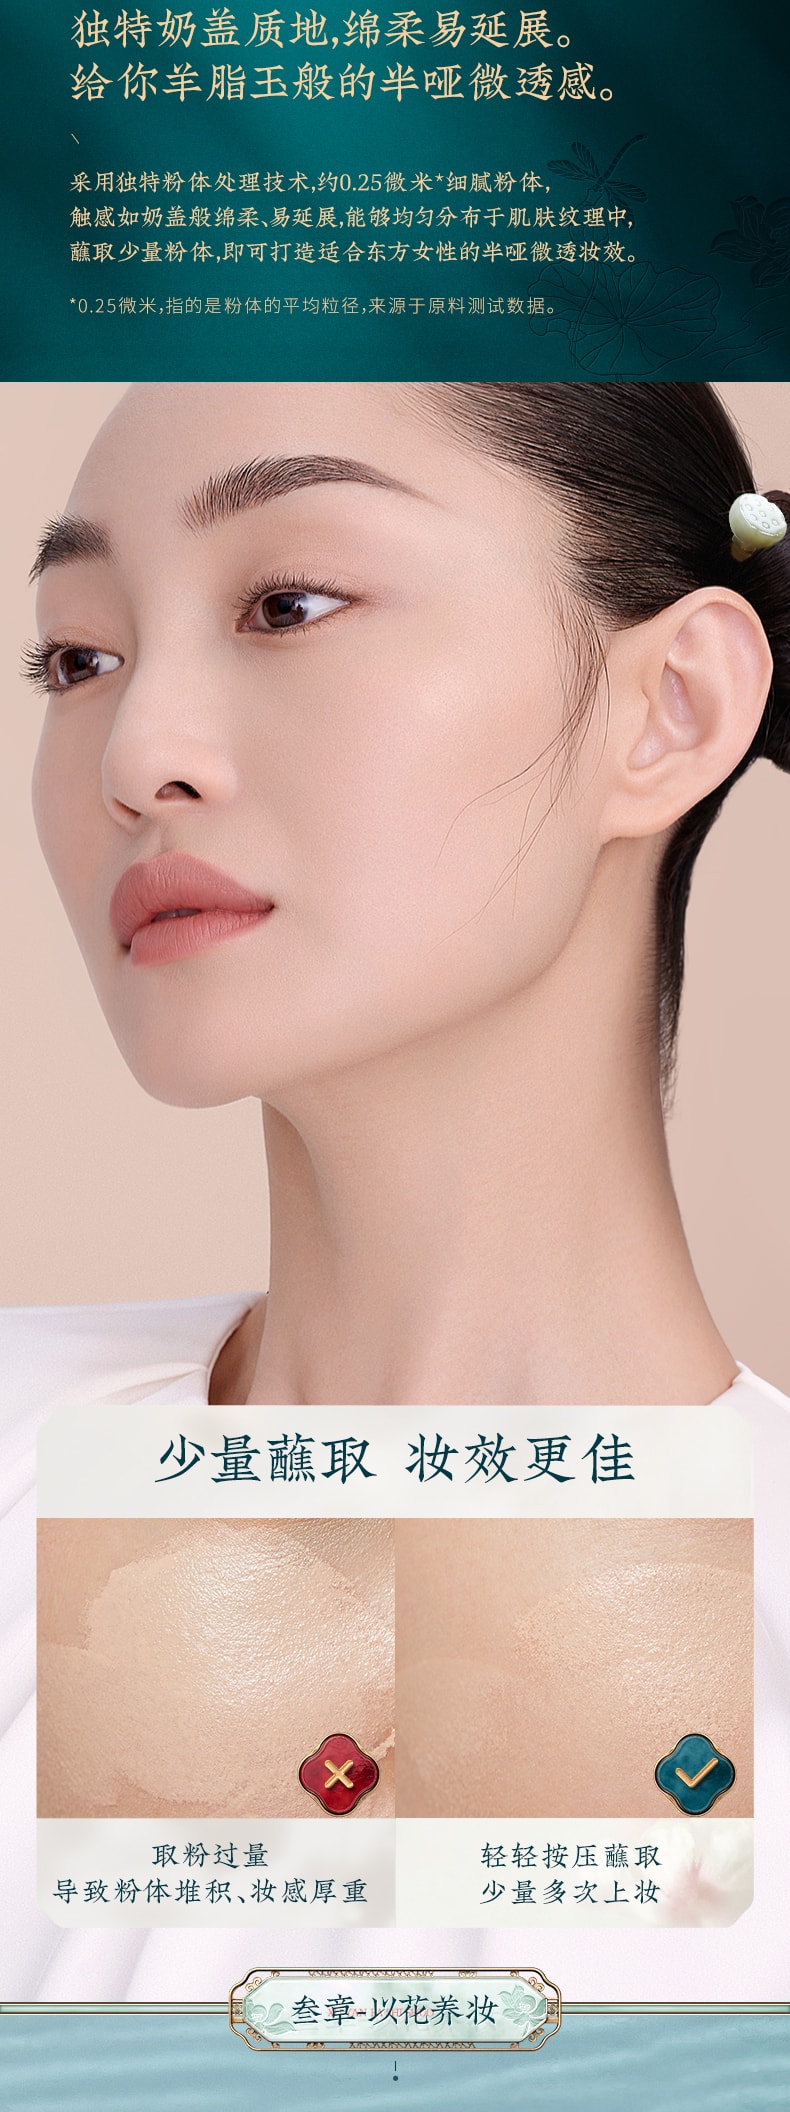 【China Direct Mail】Huaxizi Jade Cushion Liquid Foundation N25 Shui Lianfeng Lotus (soft skin tone) 1pc